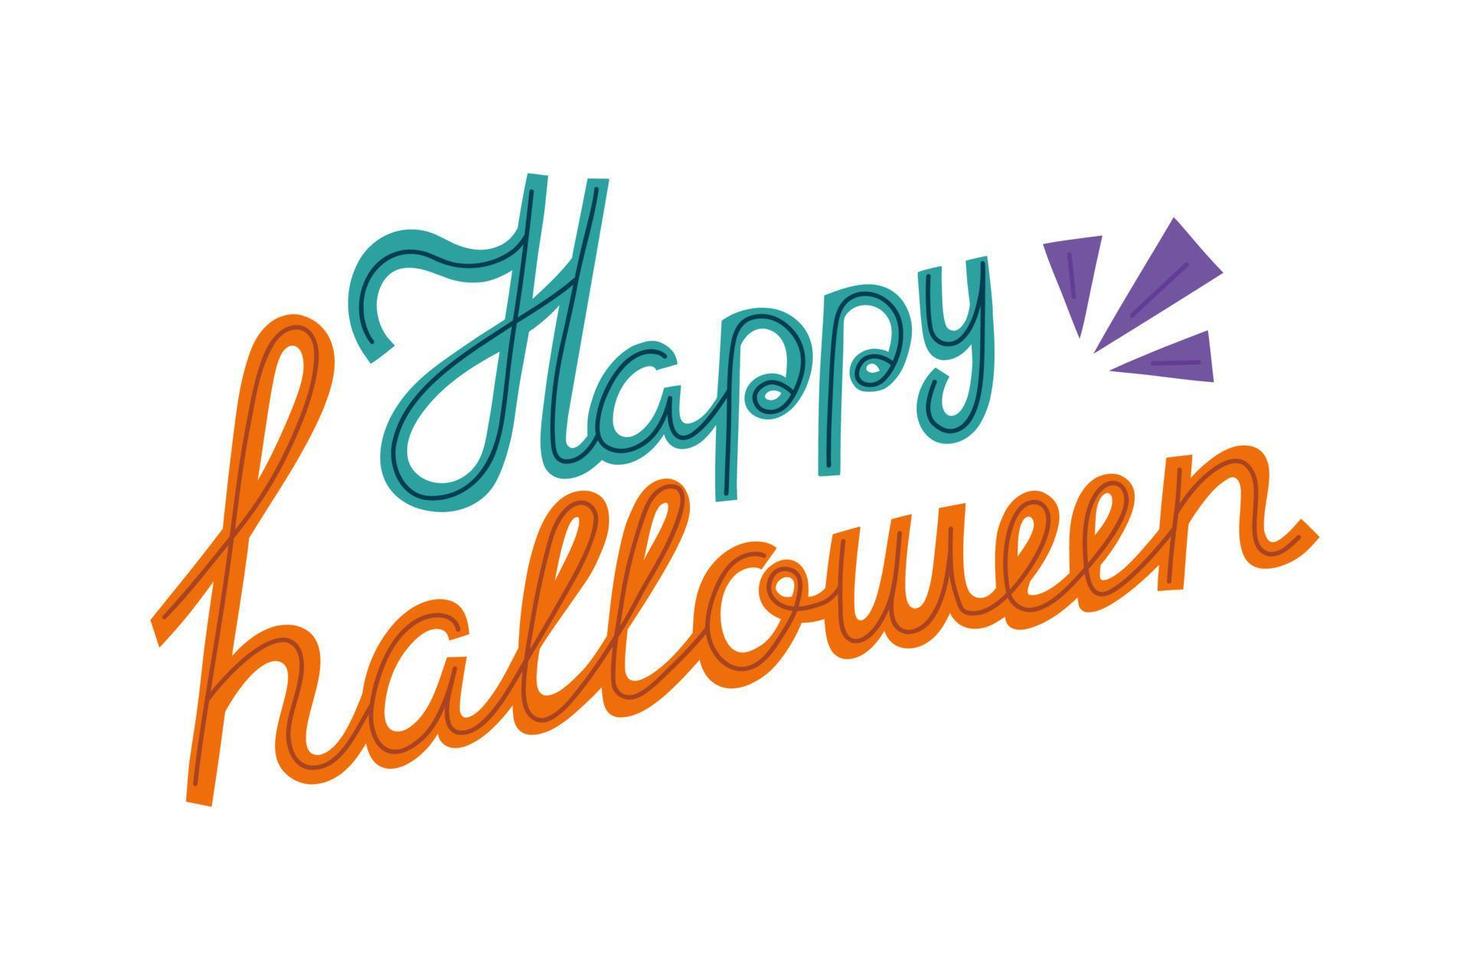 Fröhliches Halloween. handgezeichnete kreative beschriftung für feiertagsgrußkarte und einladung, flyer, poster, banner halloween urlaub vektor